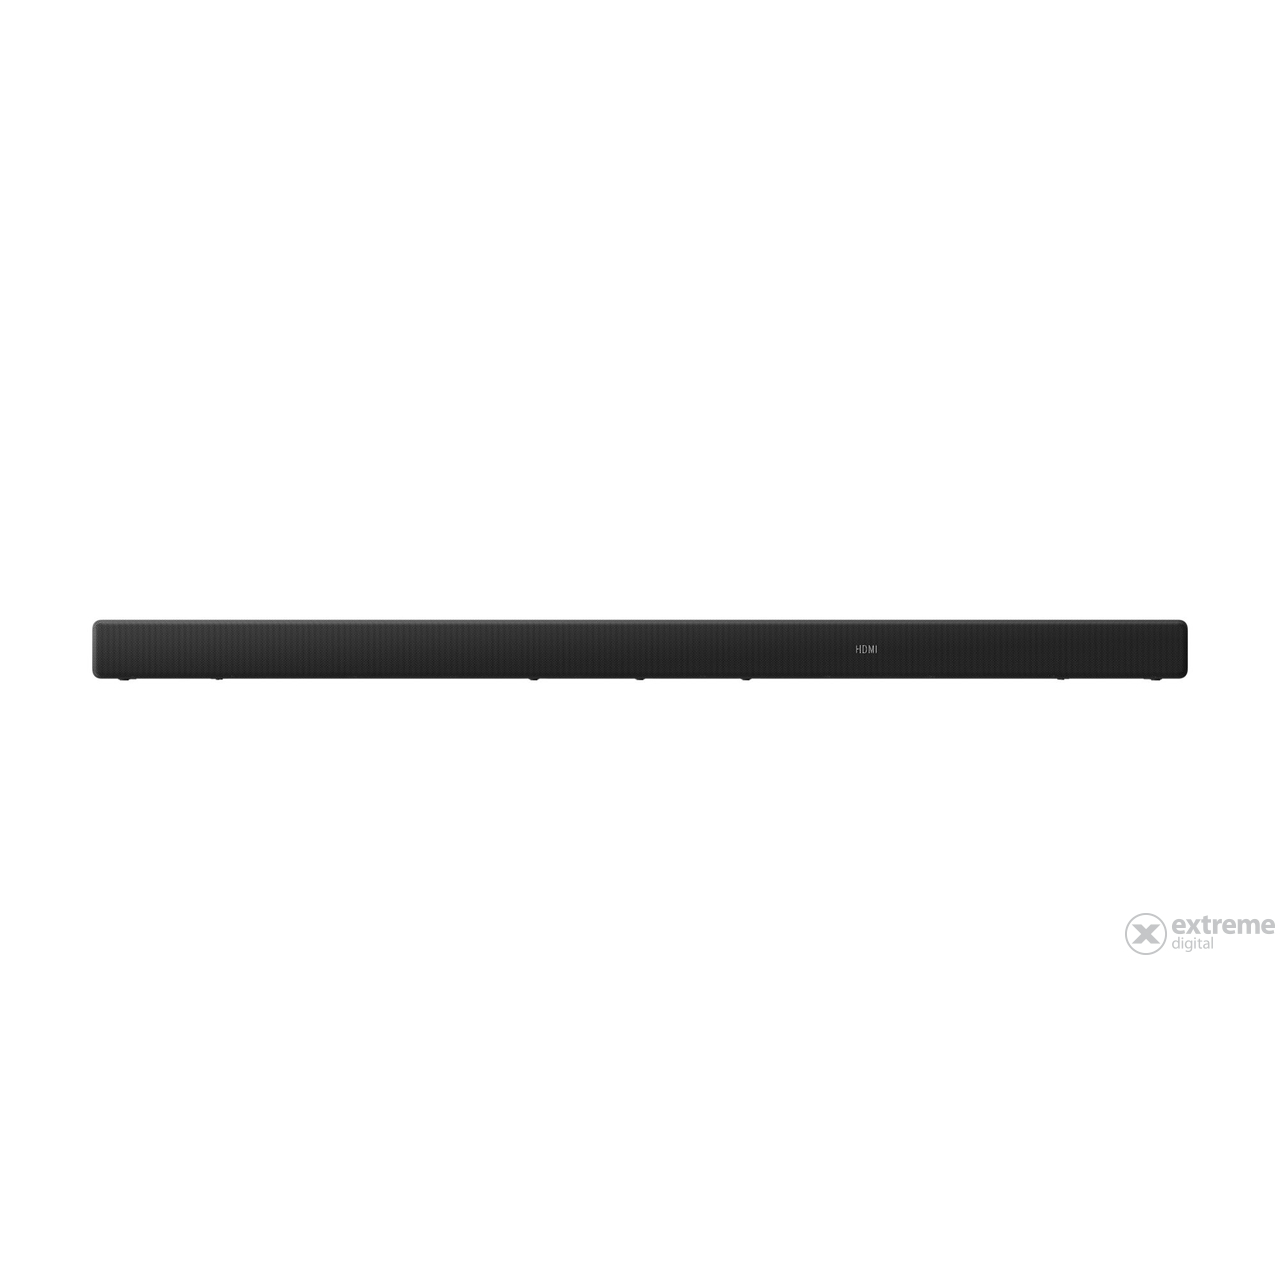 Sony HTA5000 3.1.2 soundbar, Dolby Atmos, černý